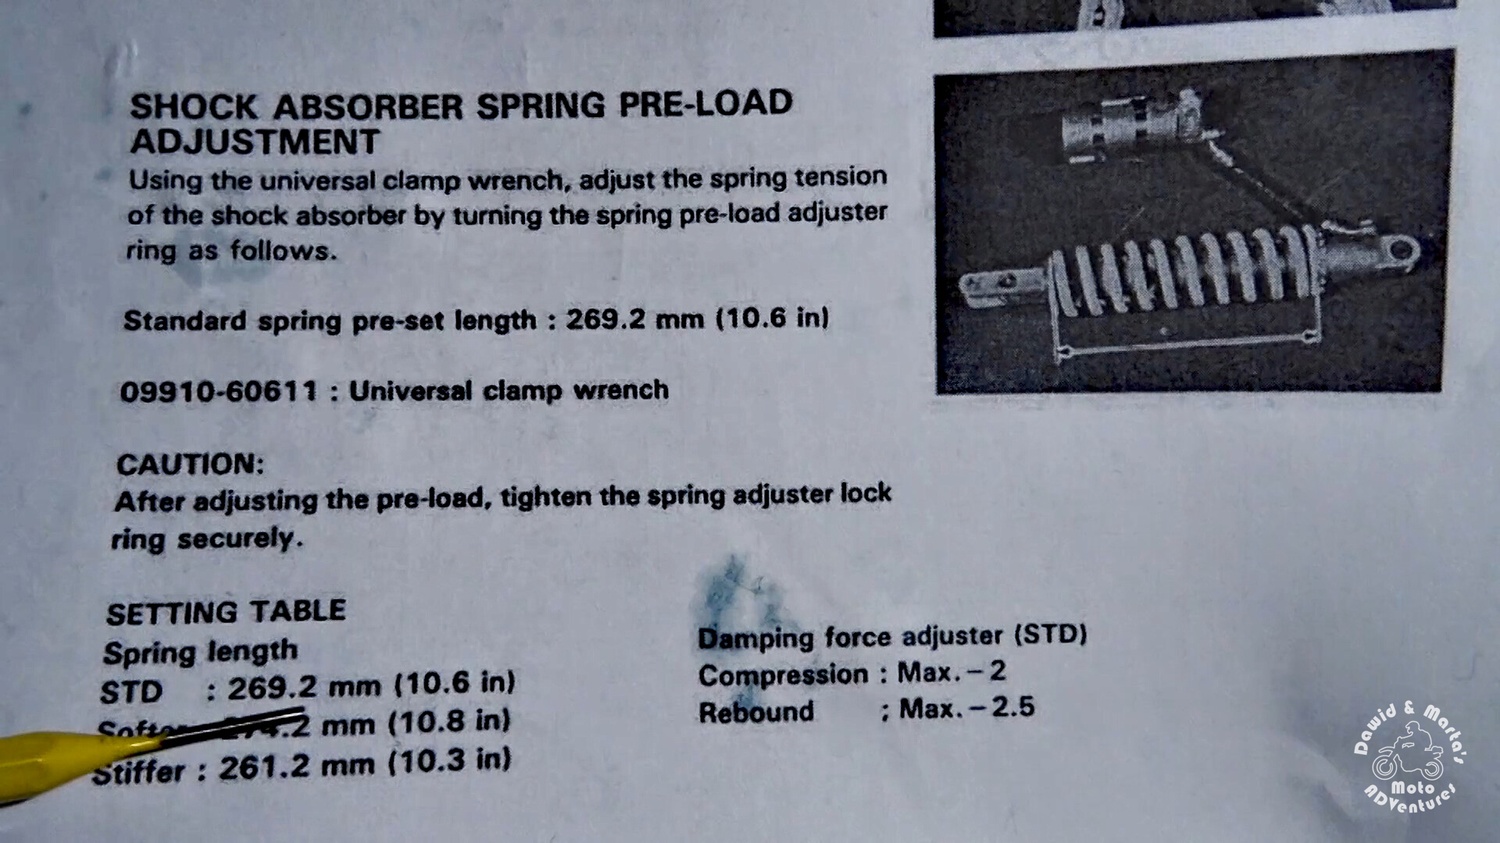 58 DR350S service manual about spring preload adjustment